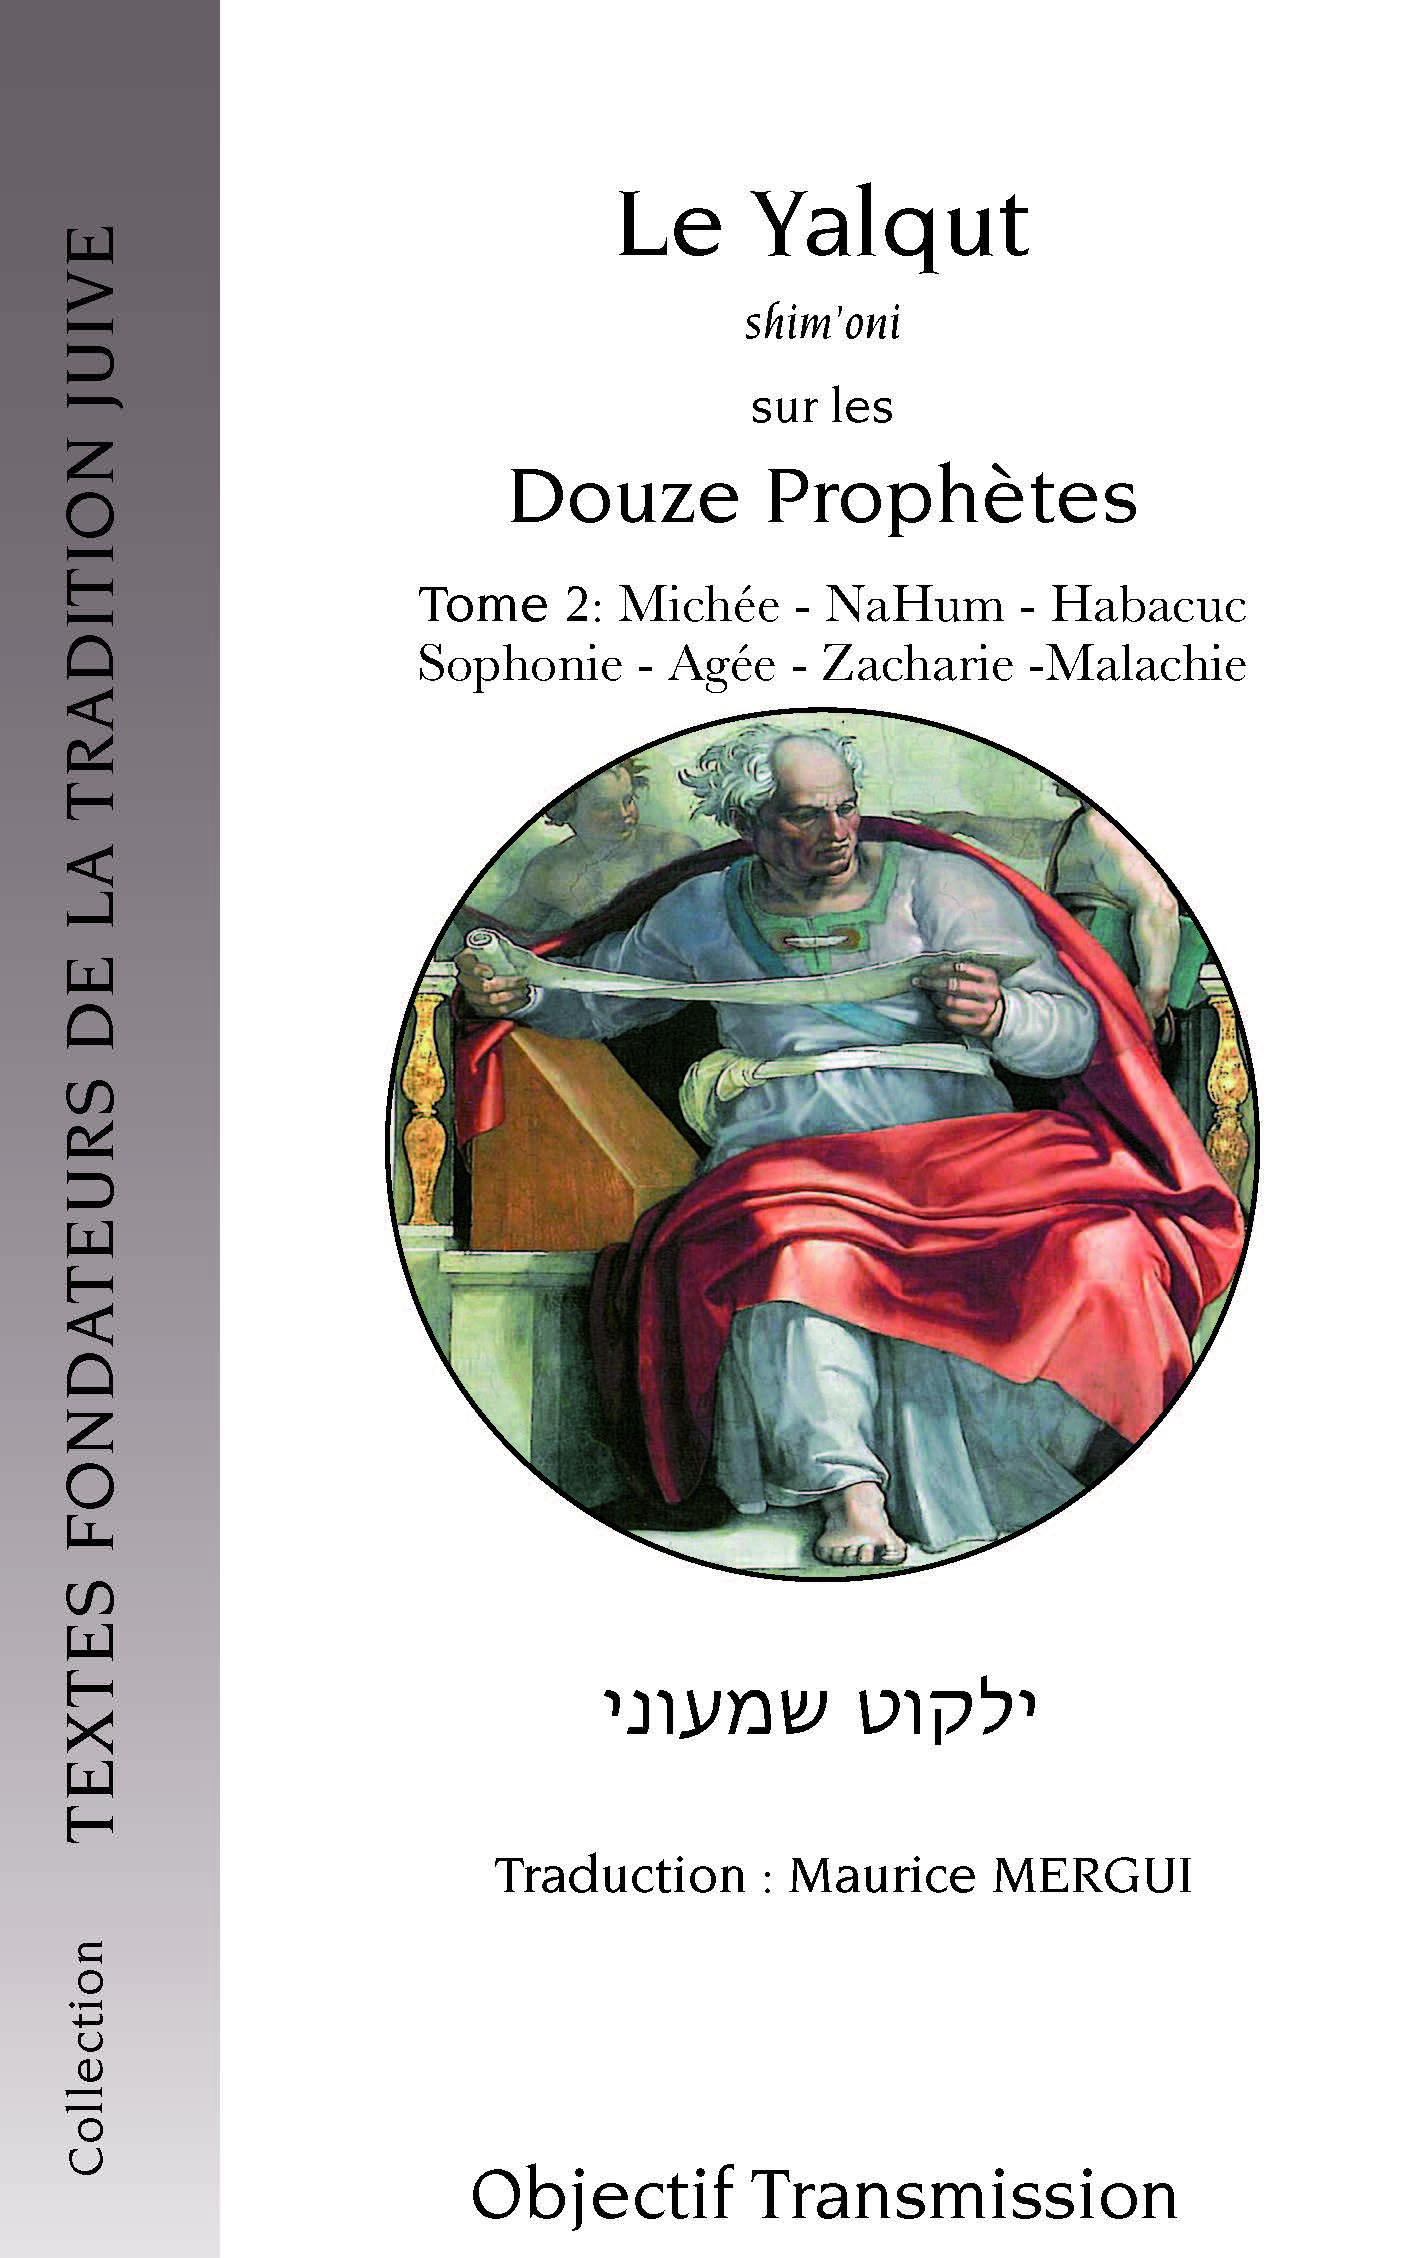 Le Yalqut sur les Douze Prophètes (Tome 2) 